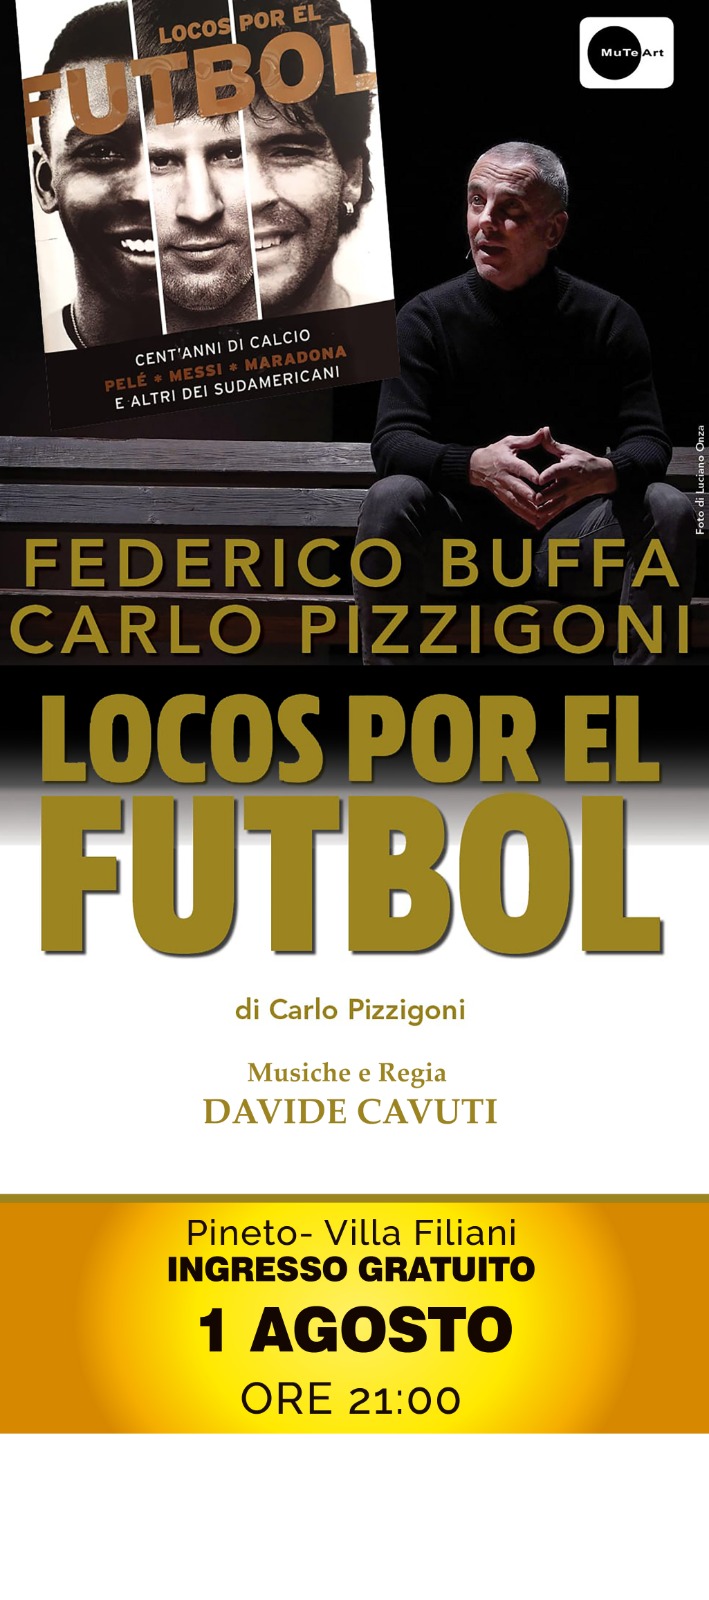 “Locos por el fútbol” en Pineto, programa de presentación del gran fútbol con Buffa y Pizzigoni – ekuonews.it